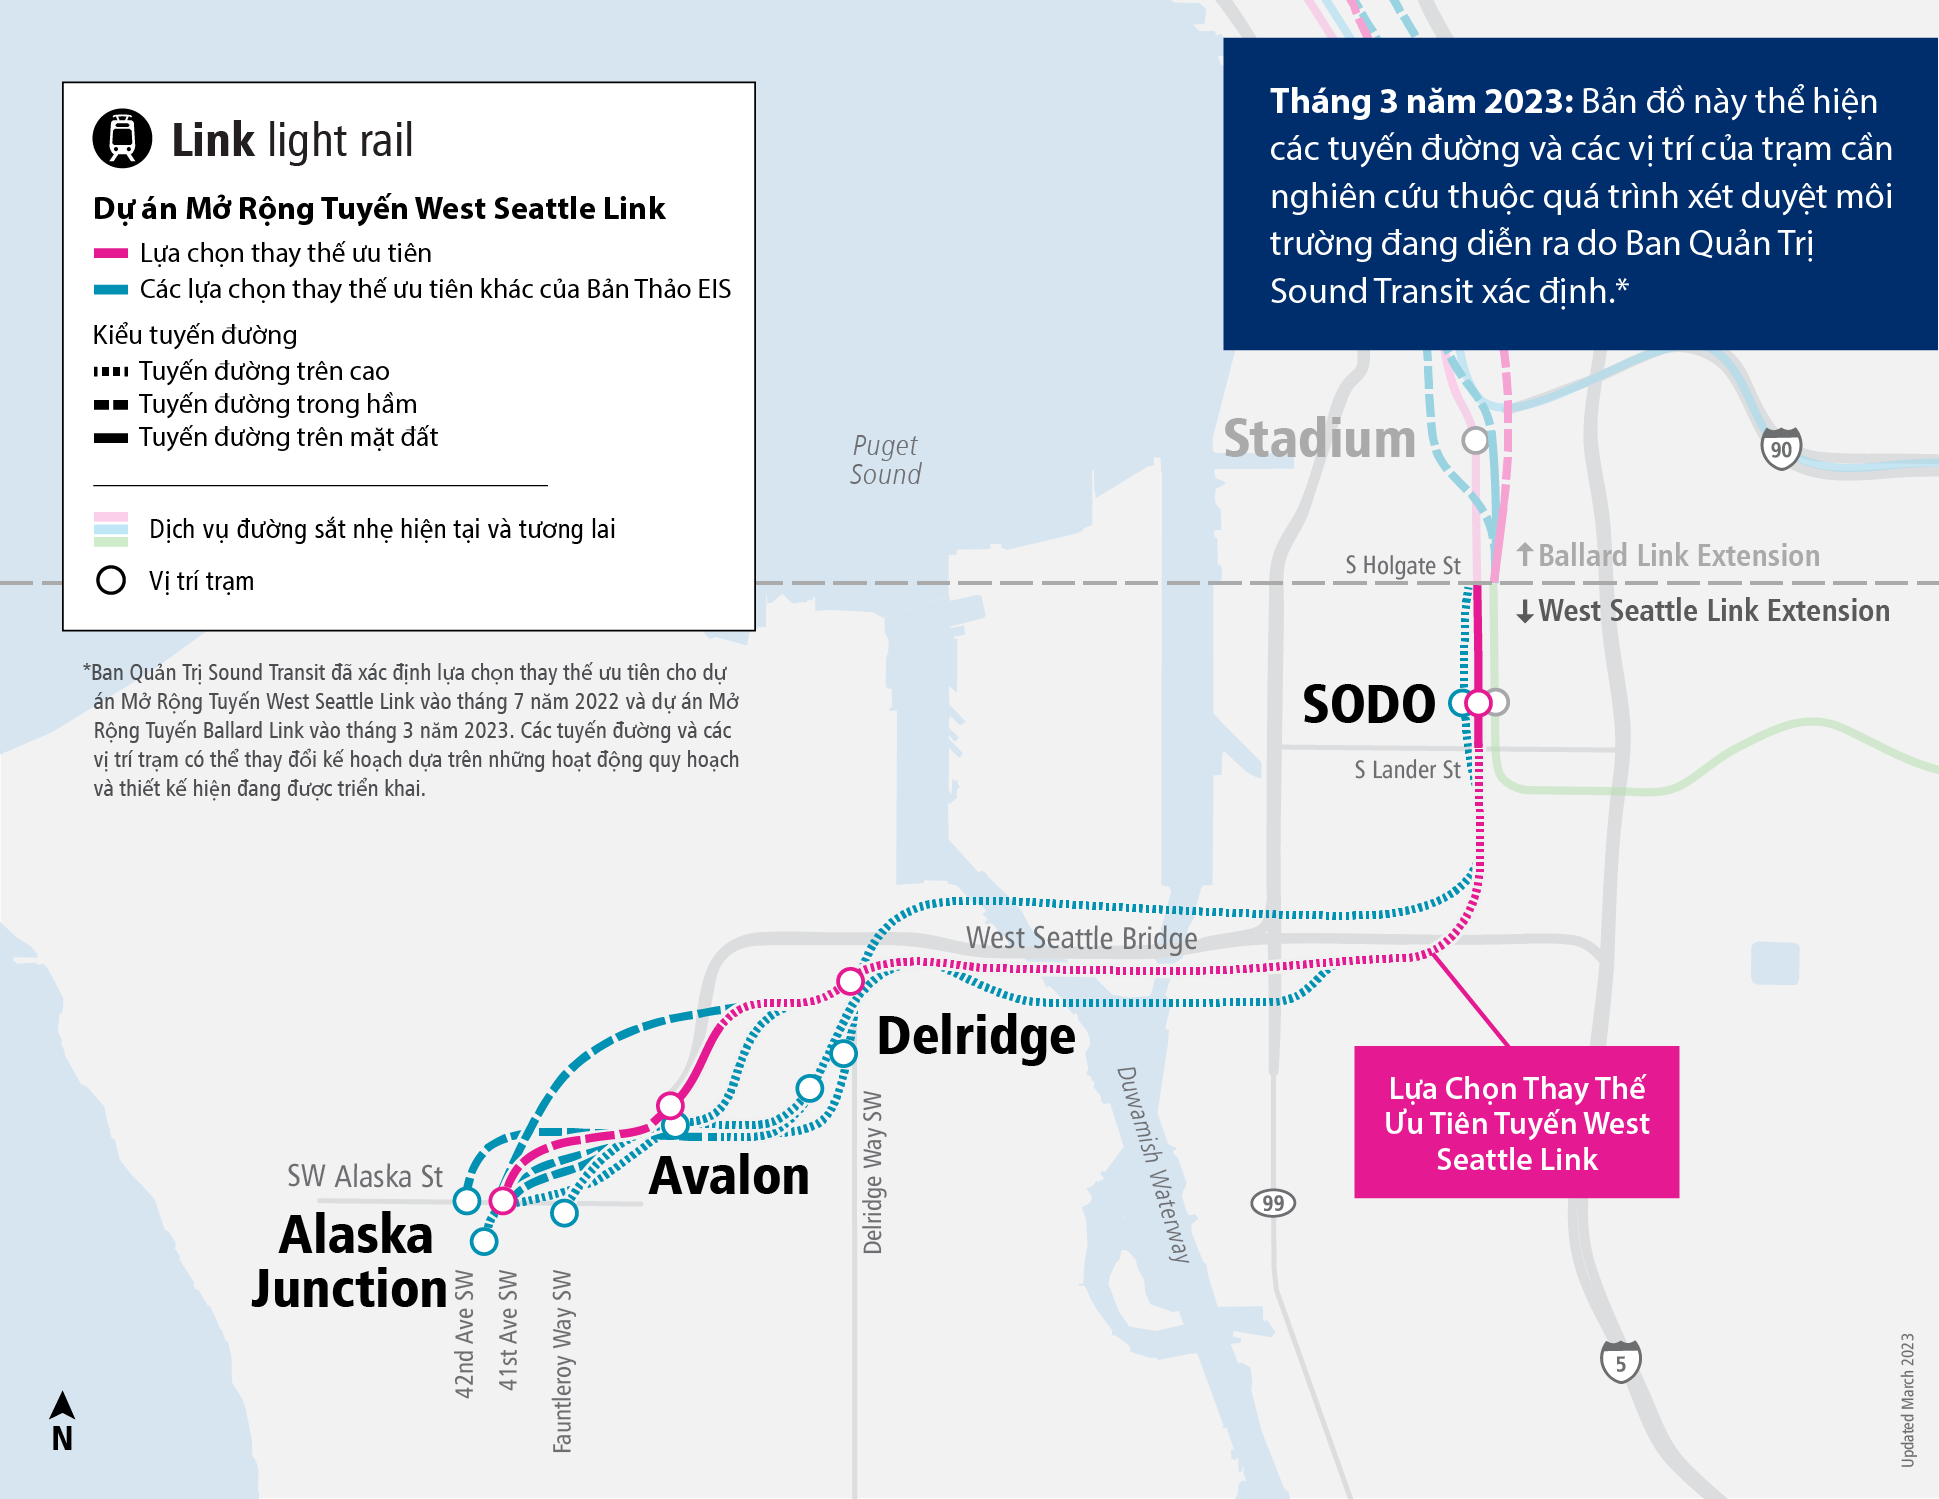 Hình ảnh minh hoạ bản đồ dự án Mở Rộng Tuyến West Seattle, trong đó trình bày các lựa chọn thay thế ưu tiên và những lựa chọn thay thế khác hiện đang được chúng tôi đánh giá. Bản đồ cũng bao gồm vị trí các trạm và mô tả liệu lựa chọn thay thế sẽ được bố trí trên cao, trong đường hầm hay đồng mức.